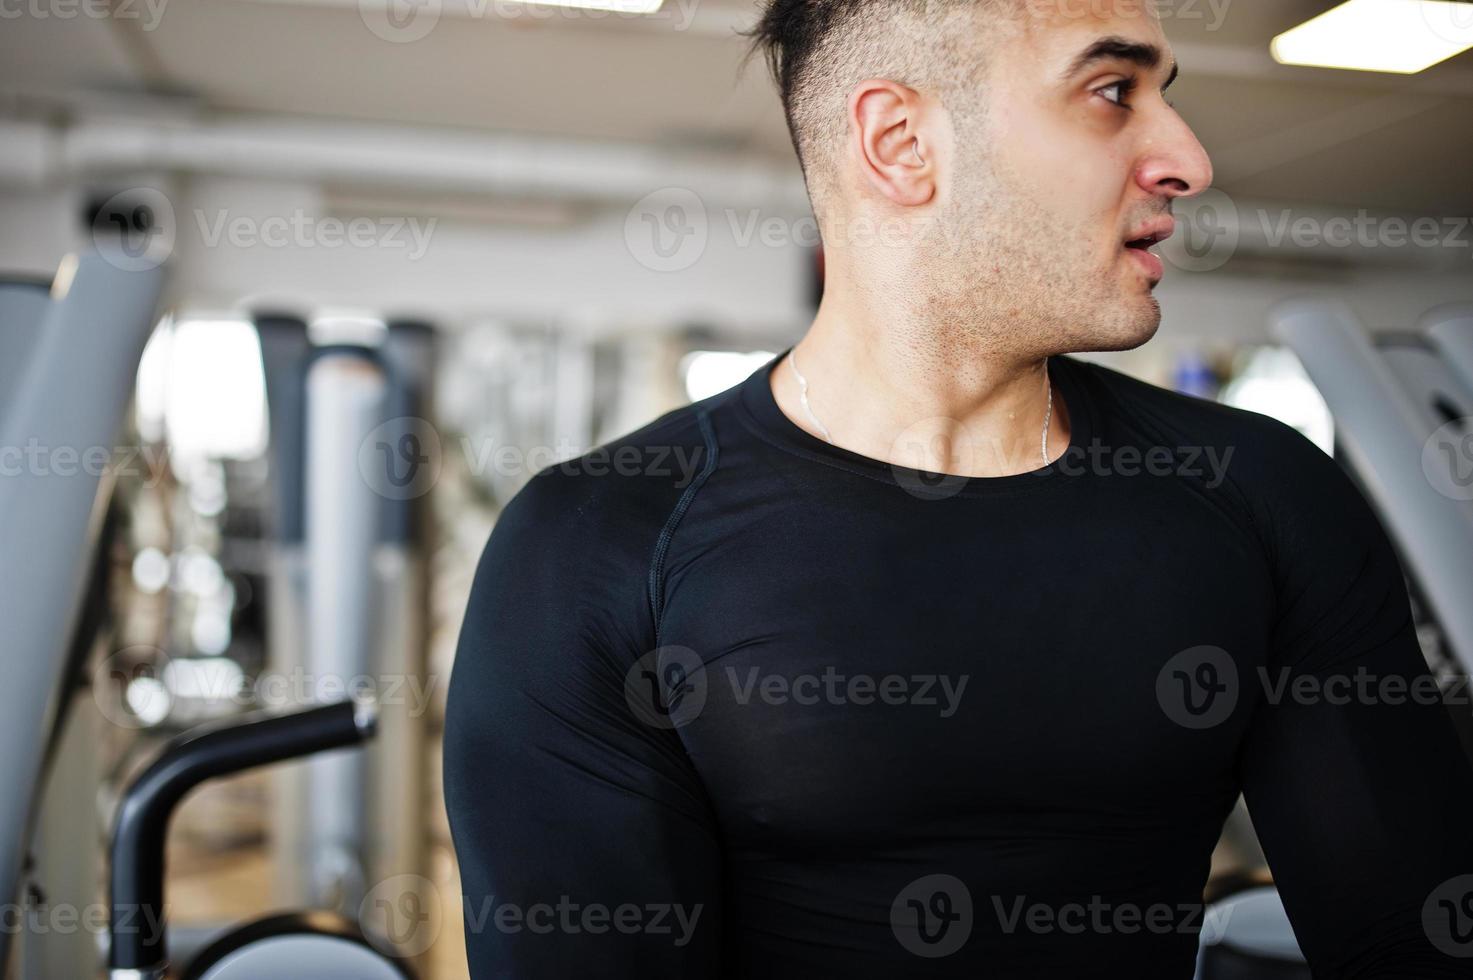 muskulös arabisk man tränar och tränar på fitnessmaskin i modernt gym. foto